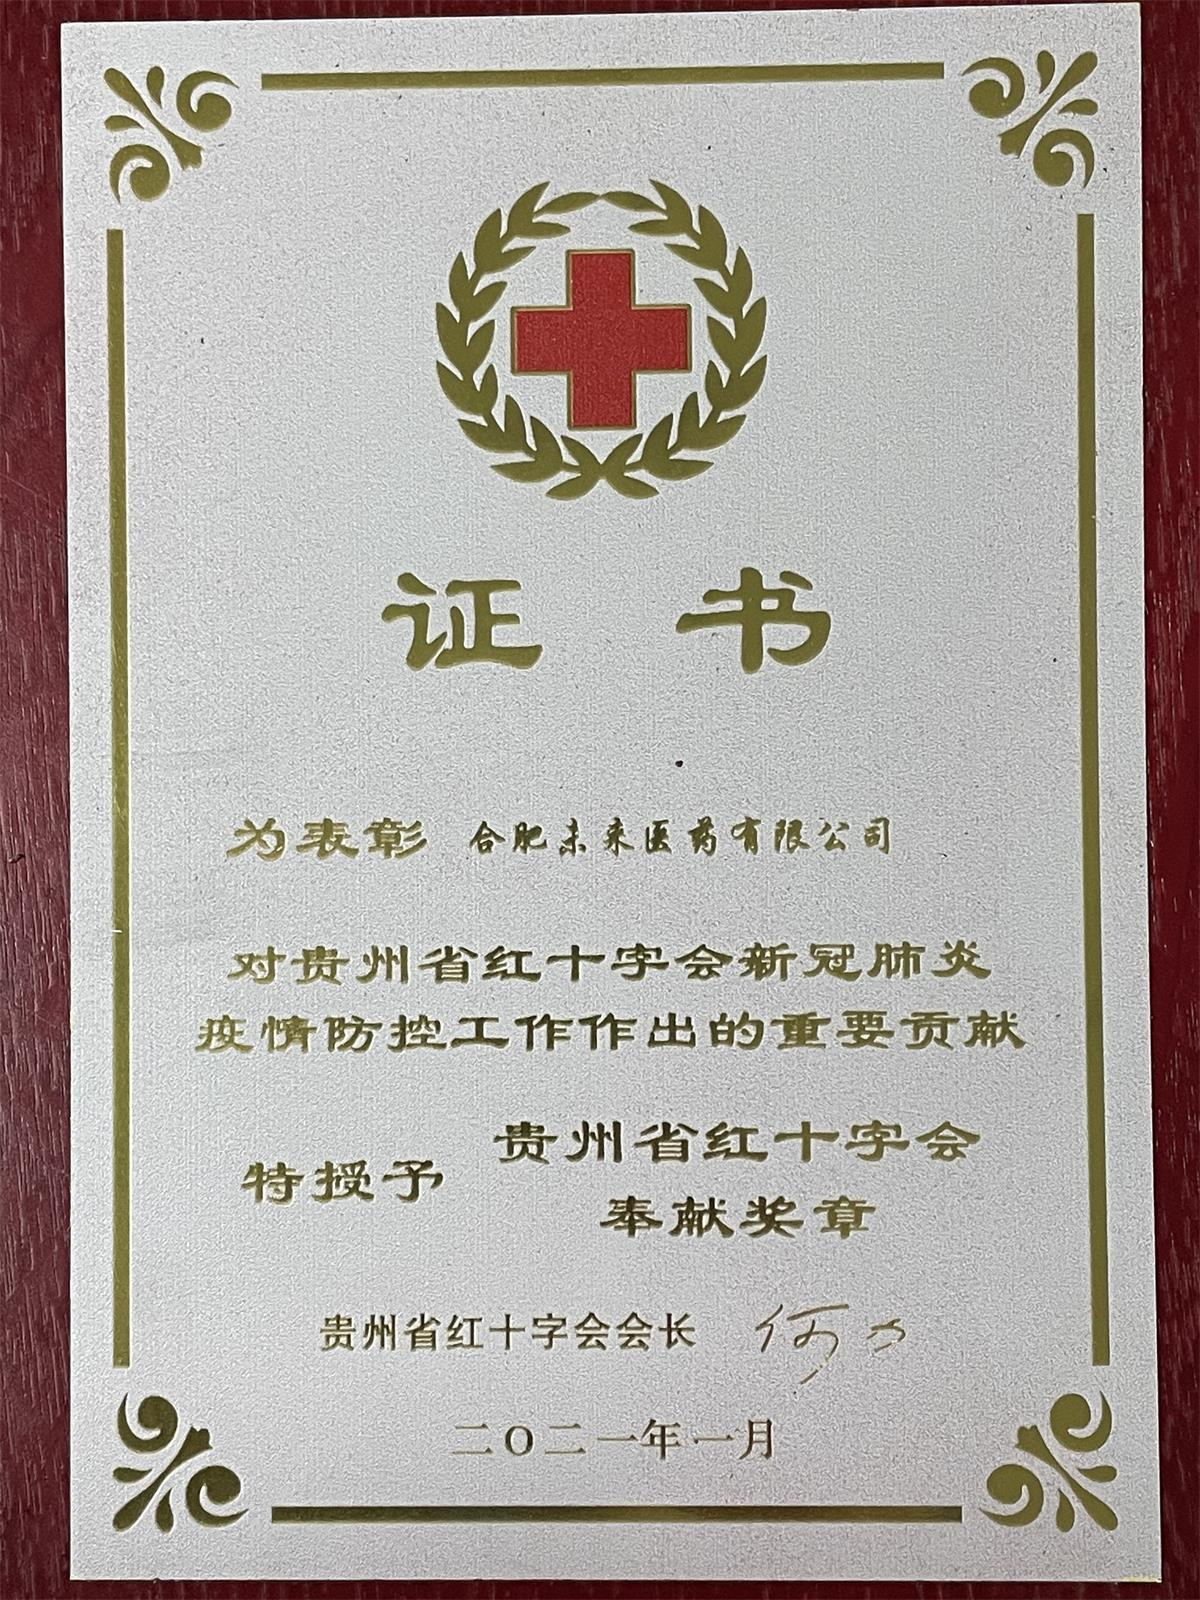 貴州紅十字會202101